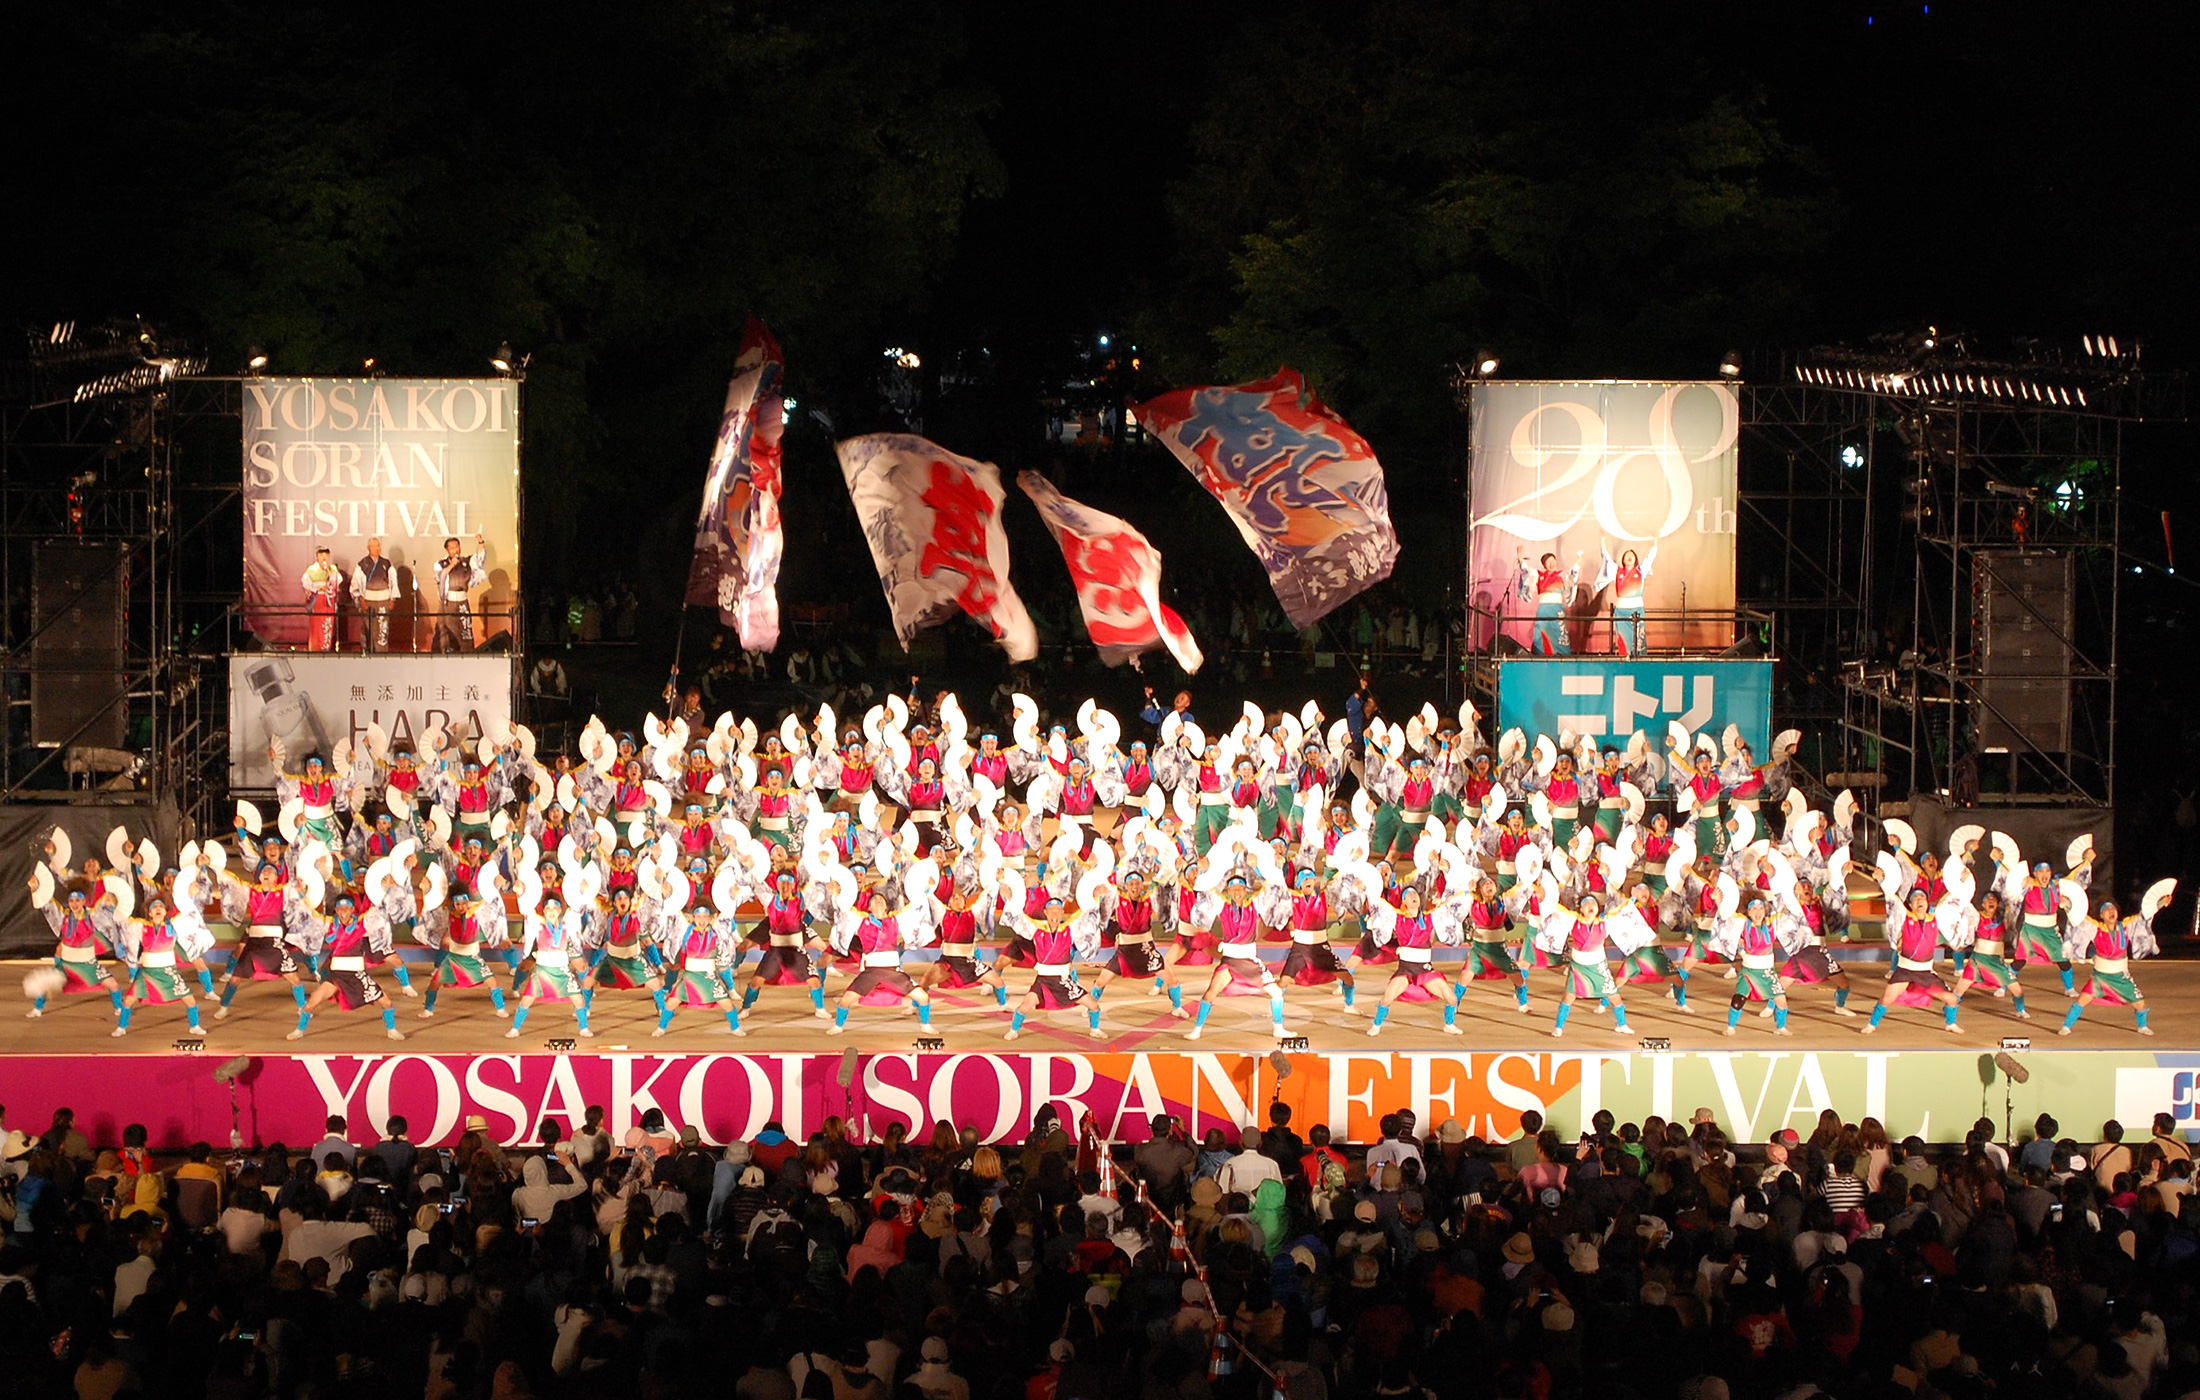 第28回yosakoiソーラン祭り6 9 日 開催レポート 開催速報 Yosakoiソーラン祭り 公式ホームページ